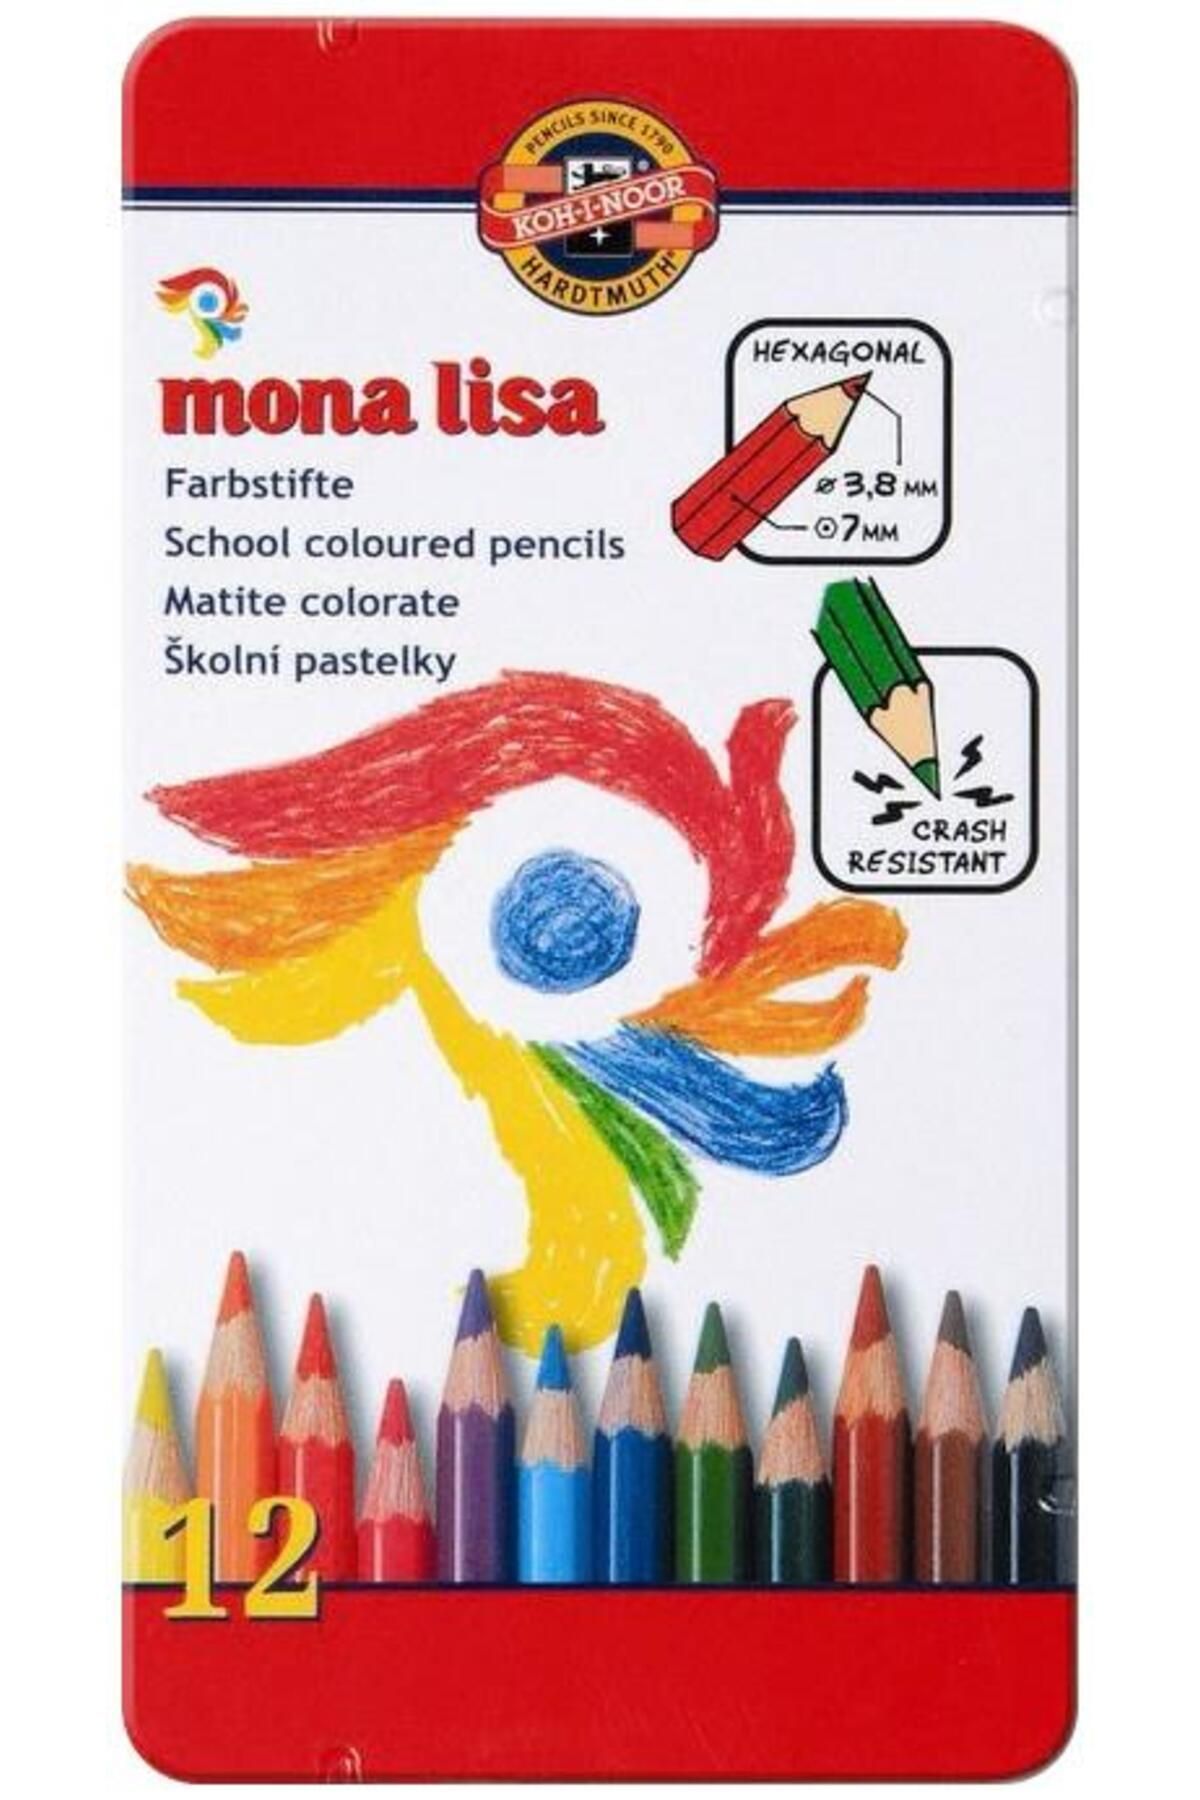 Kohinoor Set Of Artist´s Coloured Pencils 3812 12